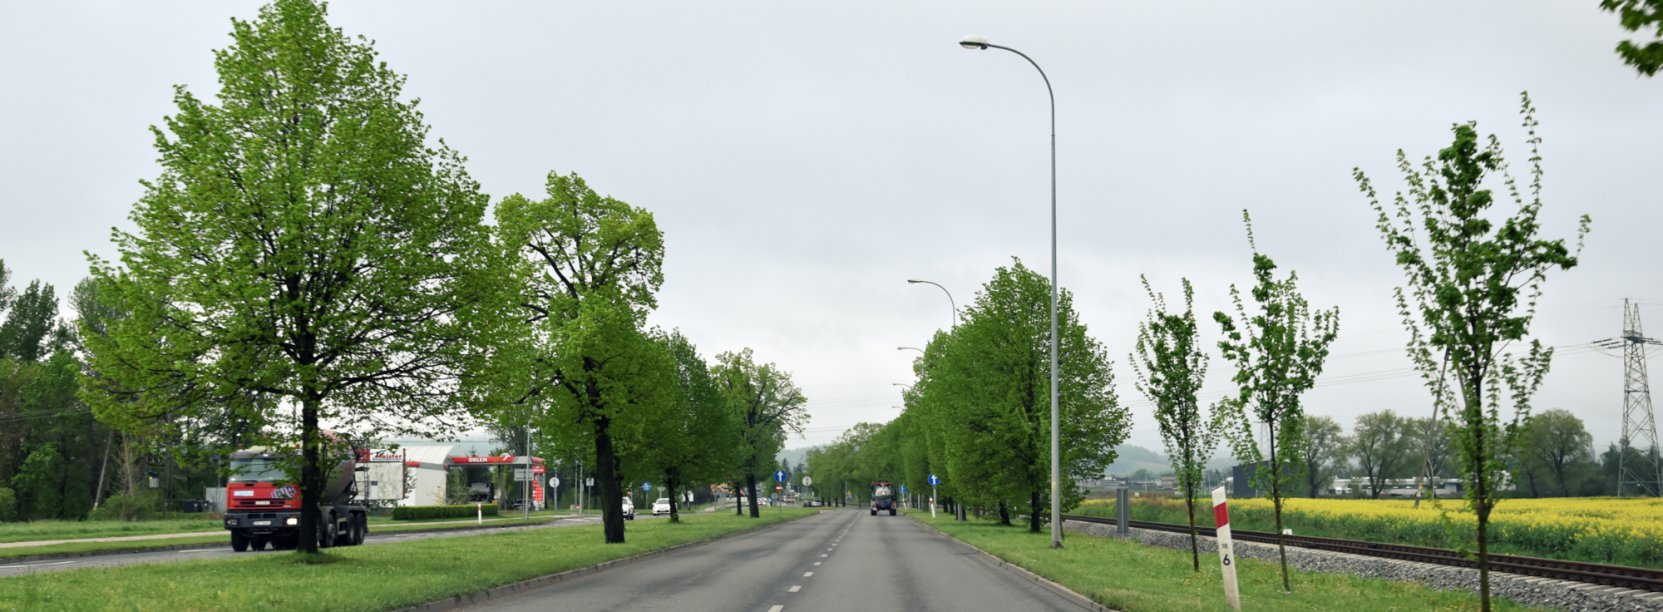 Droga w otoczeniu zieleni, widok z auta